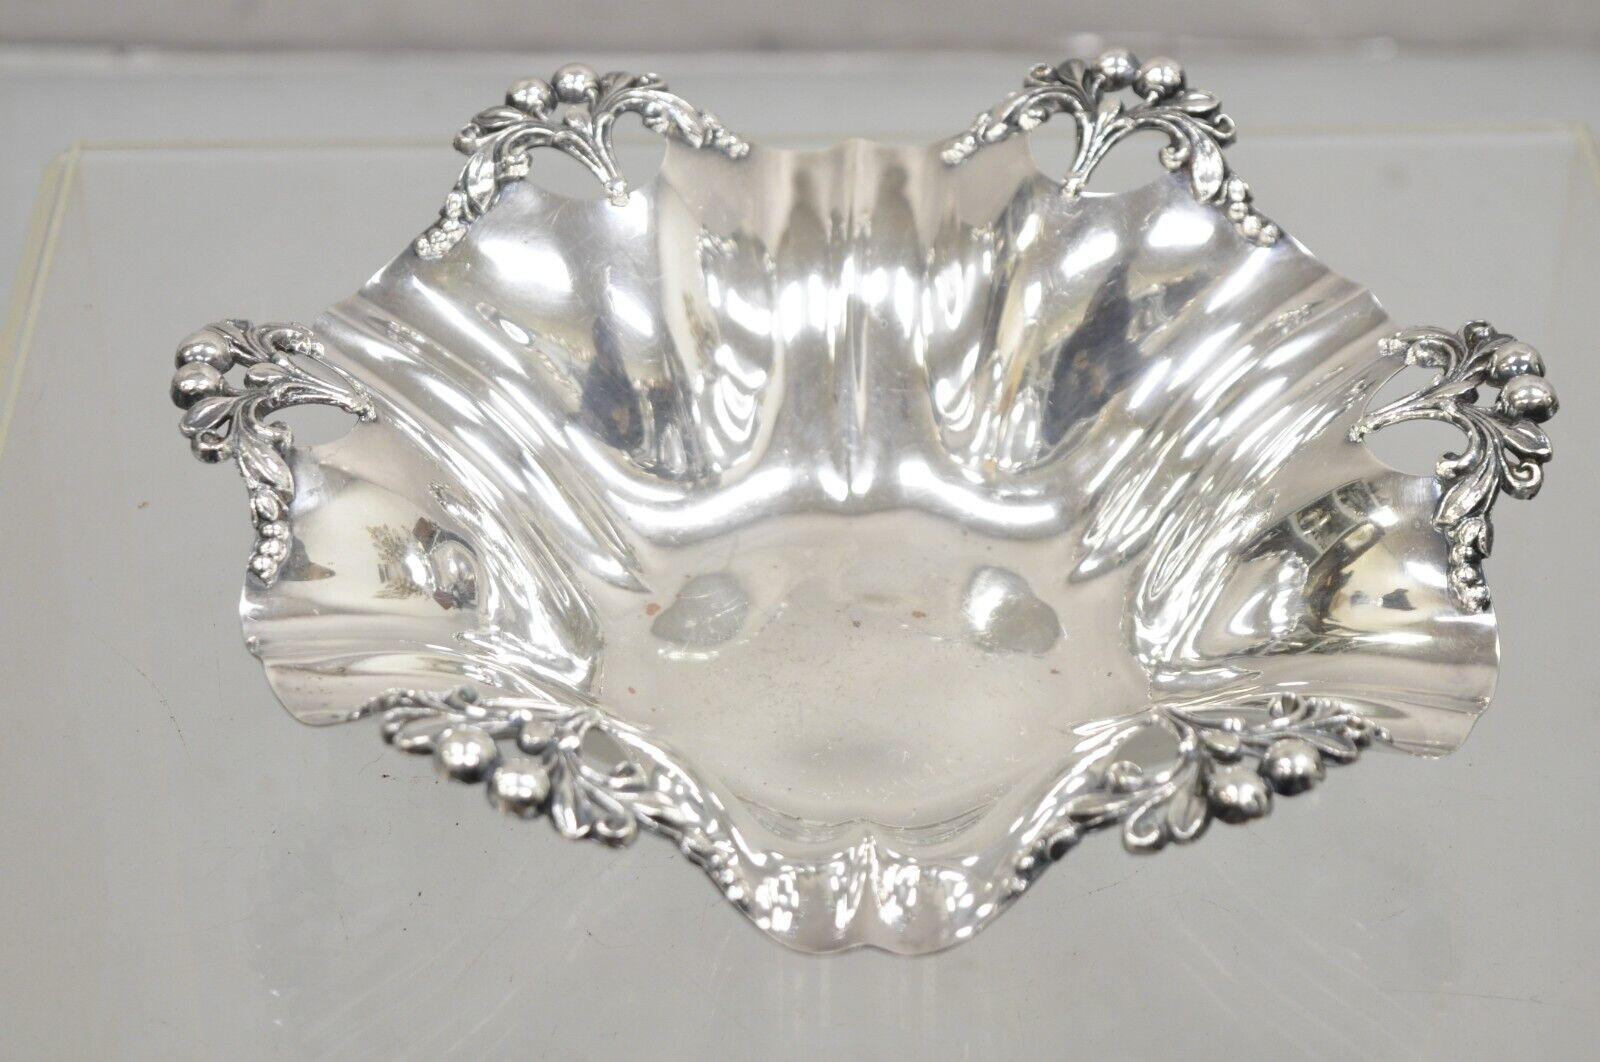 Vintage Victorian Silver Plated Taschentuch Candy Dish Fruit Bowl mit Beeren-Design. Circa Mitte des 20. Jahrhunderts. Abmessungen: 3